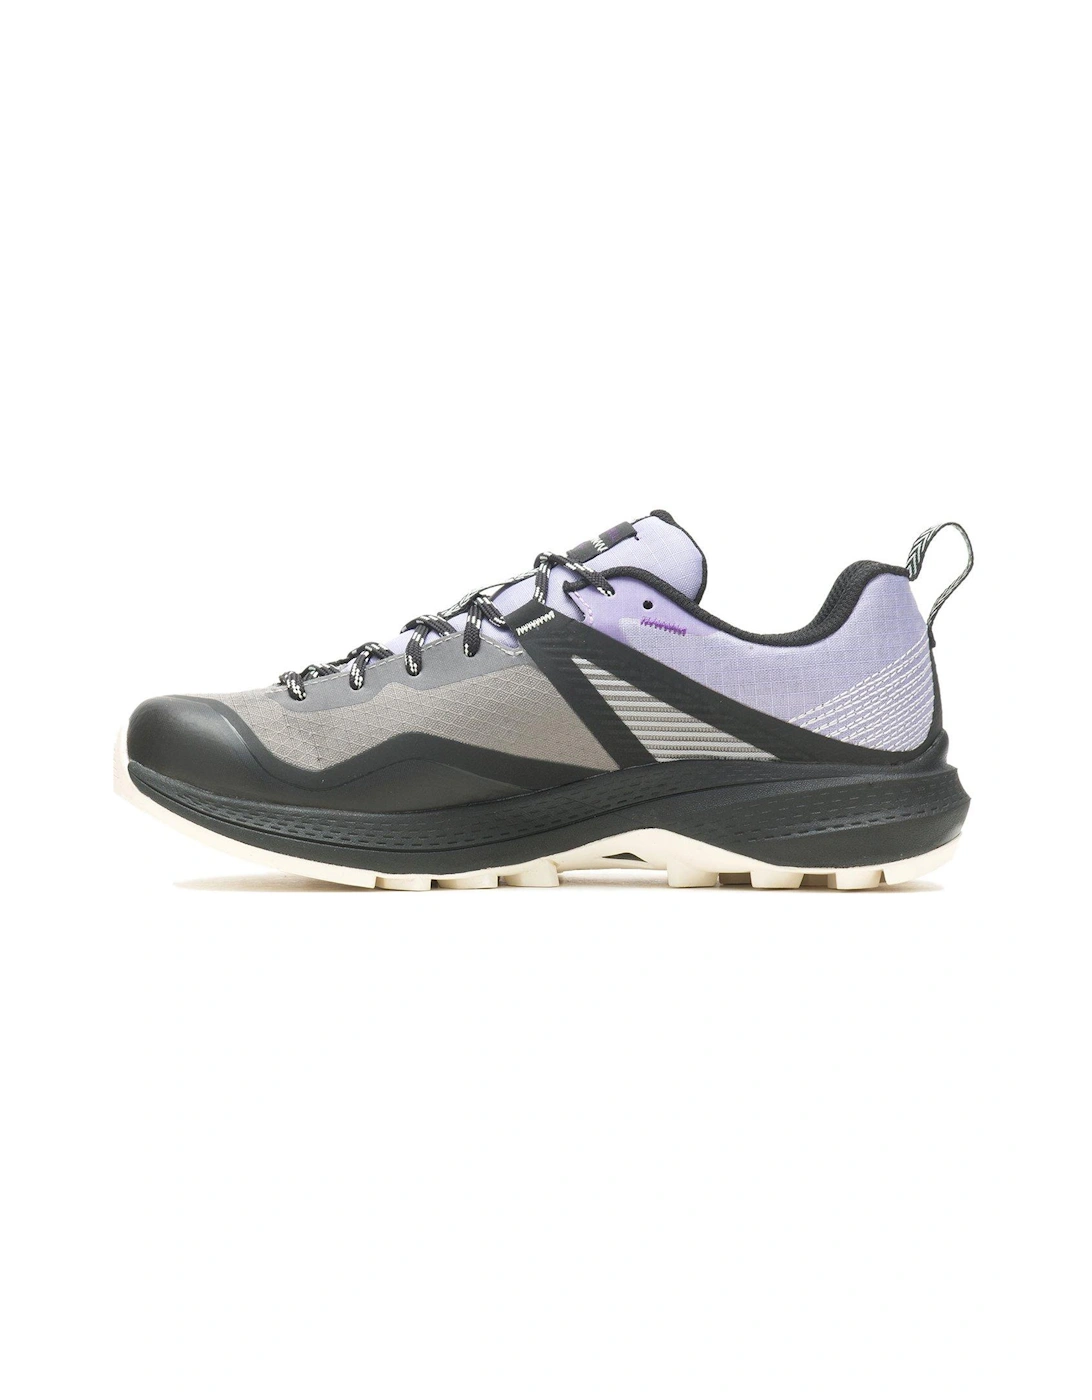 Womens Mqm 3 Goretex Hiking Shoes - Grey/light Purple